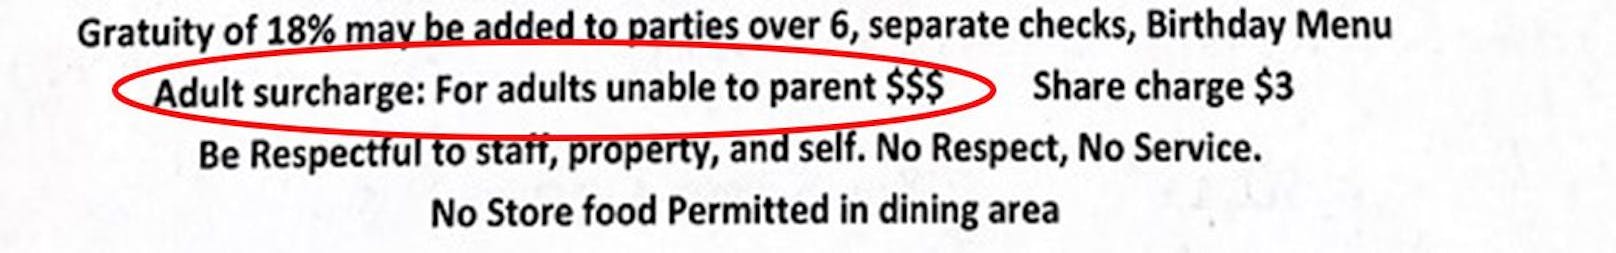 "Erwachsenenzuschlag: Für Erwachsene, die nicht in der Lage sind, Eltern zu sein", heißt es im Menü des Toccoa Riverside Restaurant (Bild)